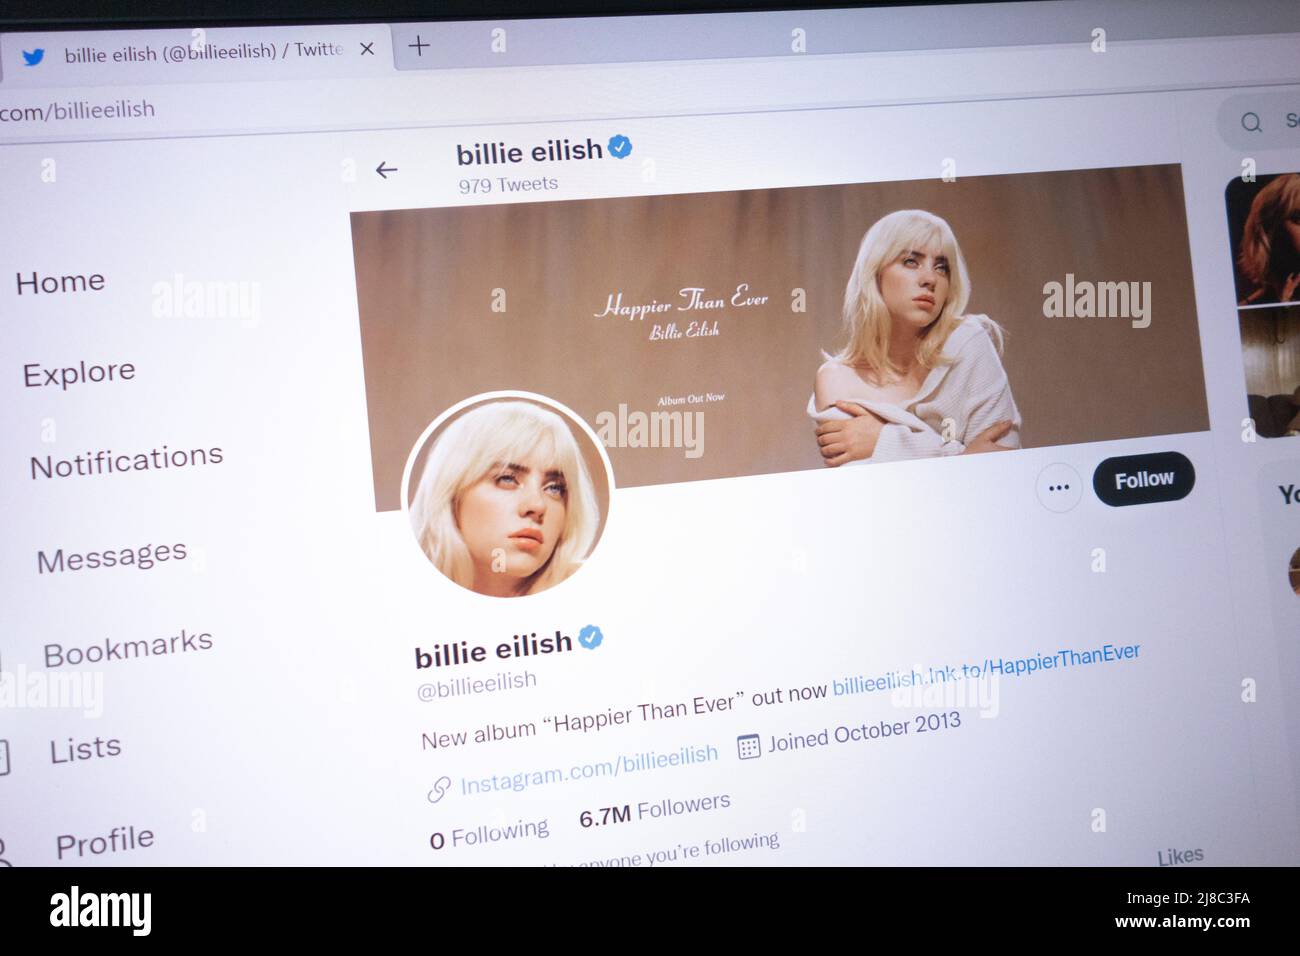 KONSKIE, POLEN - 14. Mai 2022: Billie Eilish offizieller Twitter-Account auf dem Laptop-Bildschirm angezeigt Stockfoto